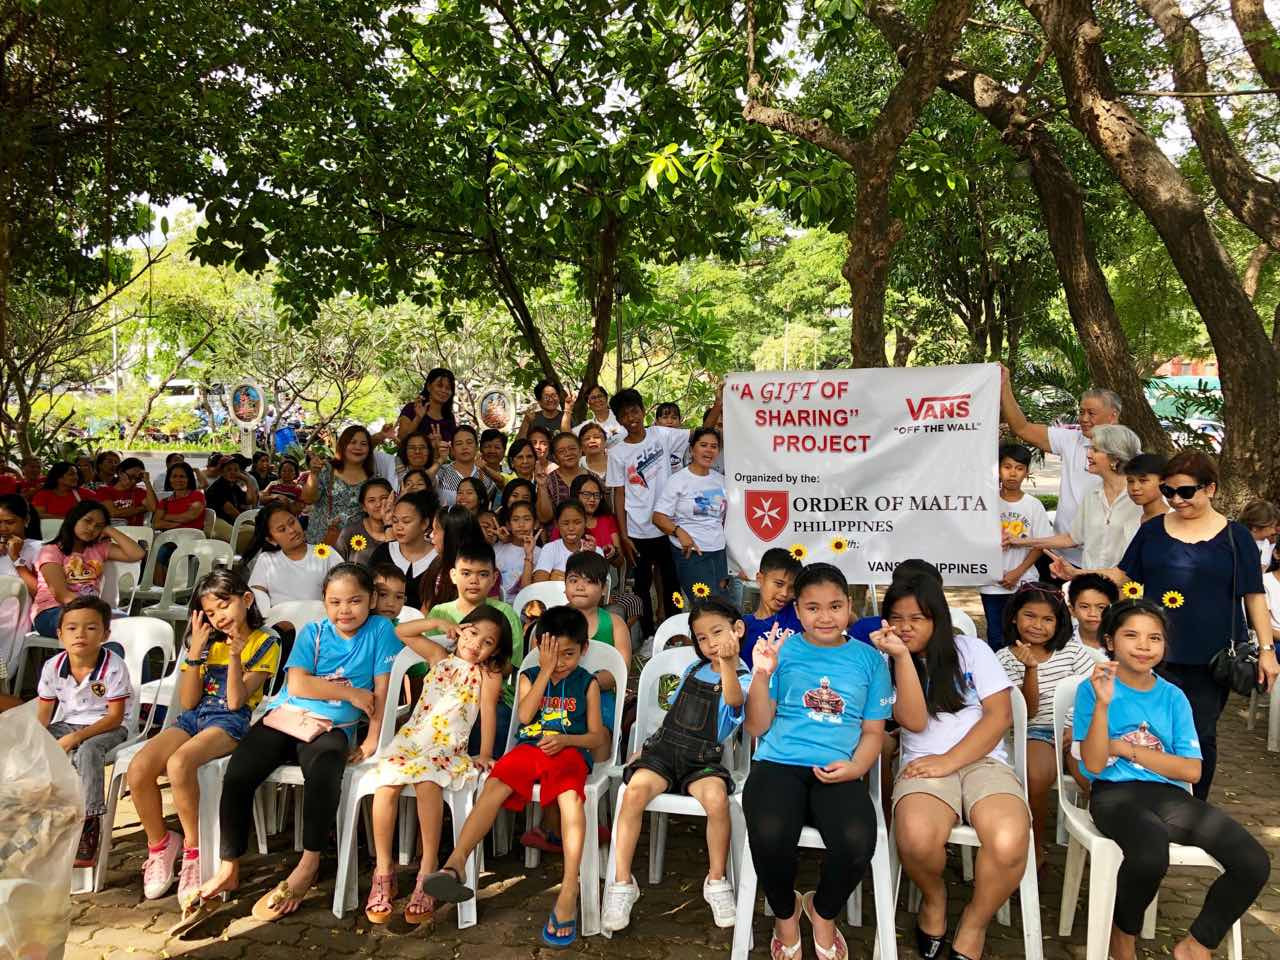 Neues Projekt liefert Schuhe für 15.000 benachteiligte Erwachsene und Kinder auf den Philippinen